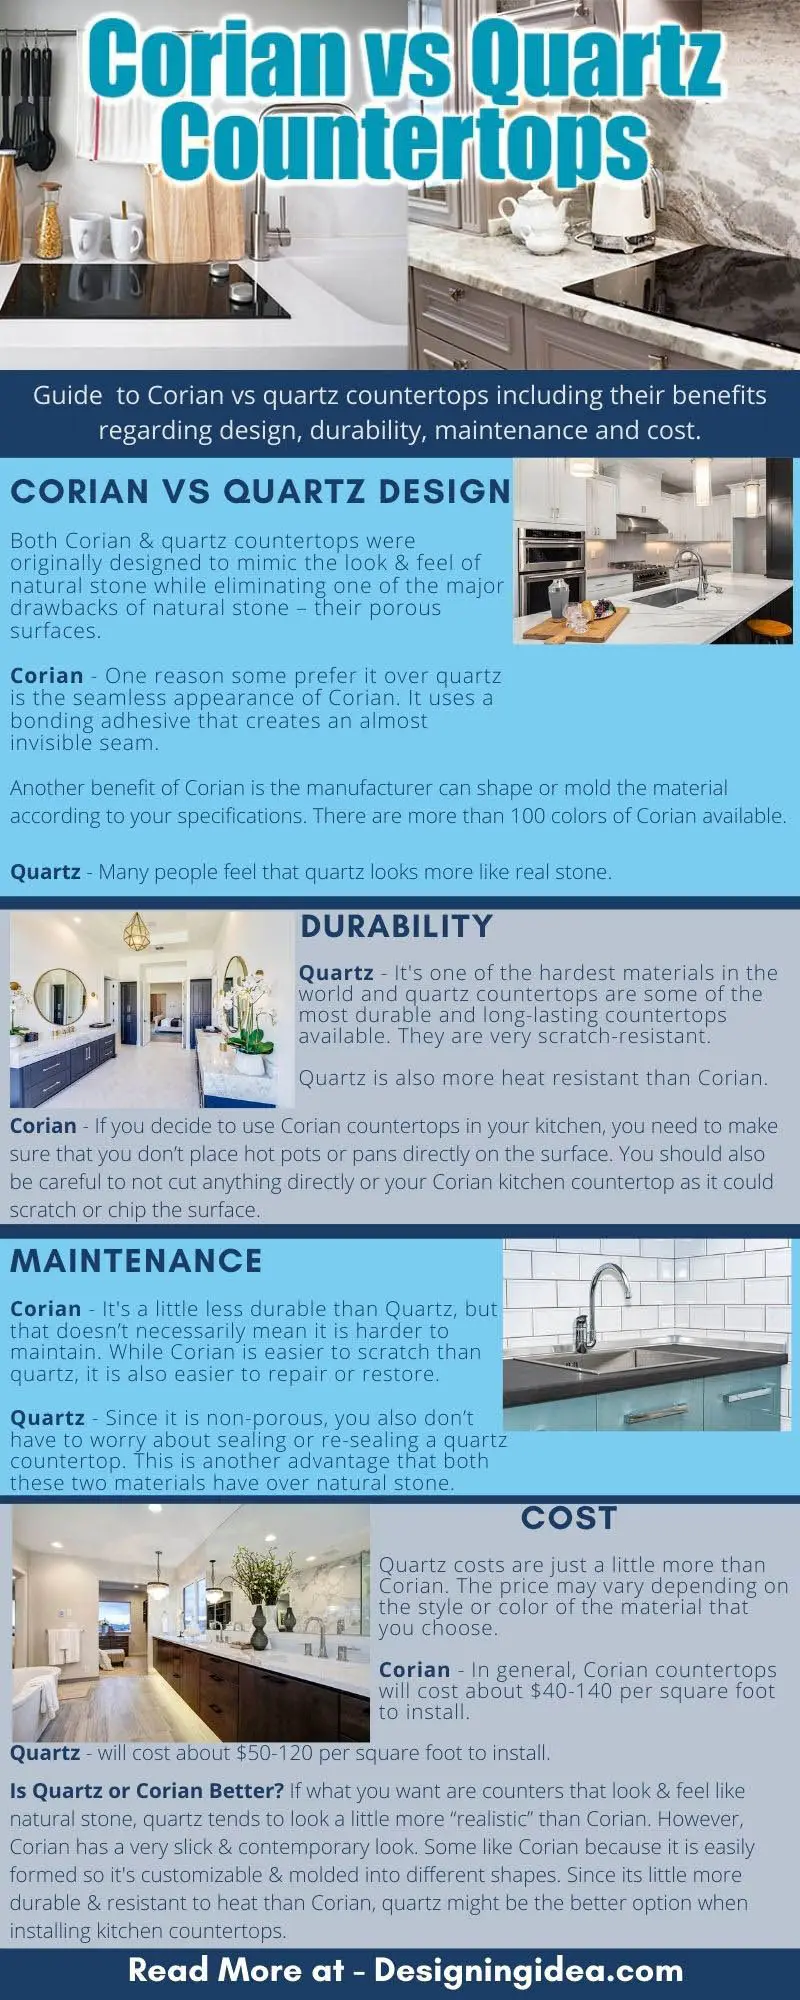 Corian vs quartz infographic